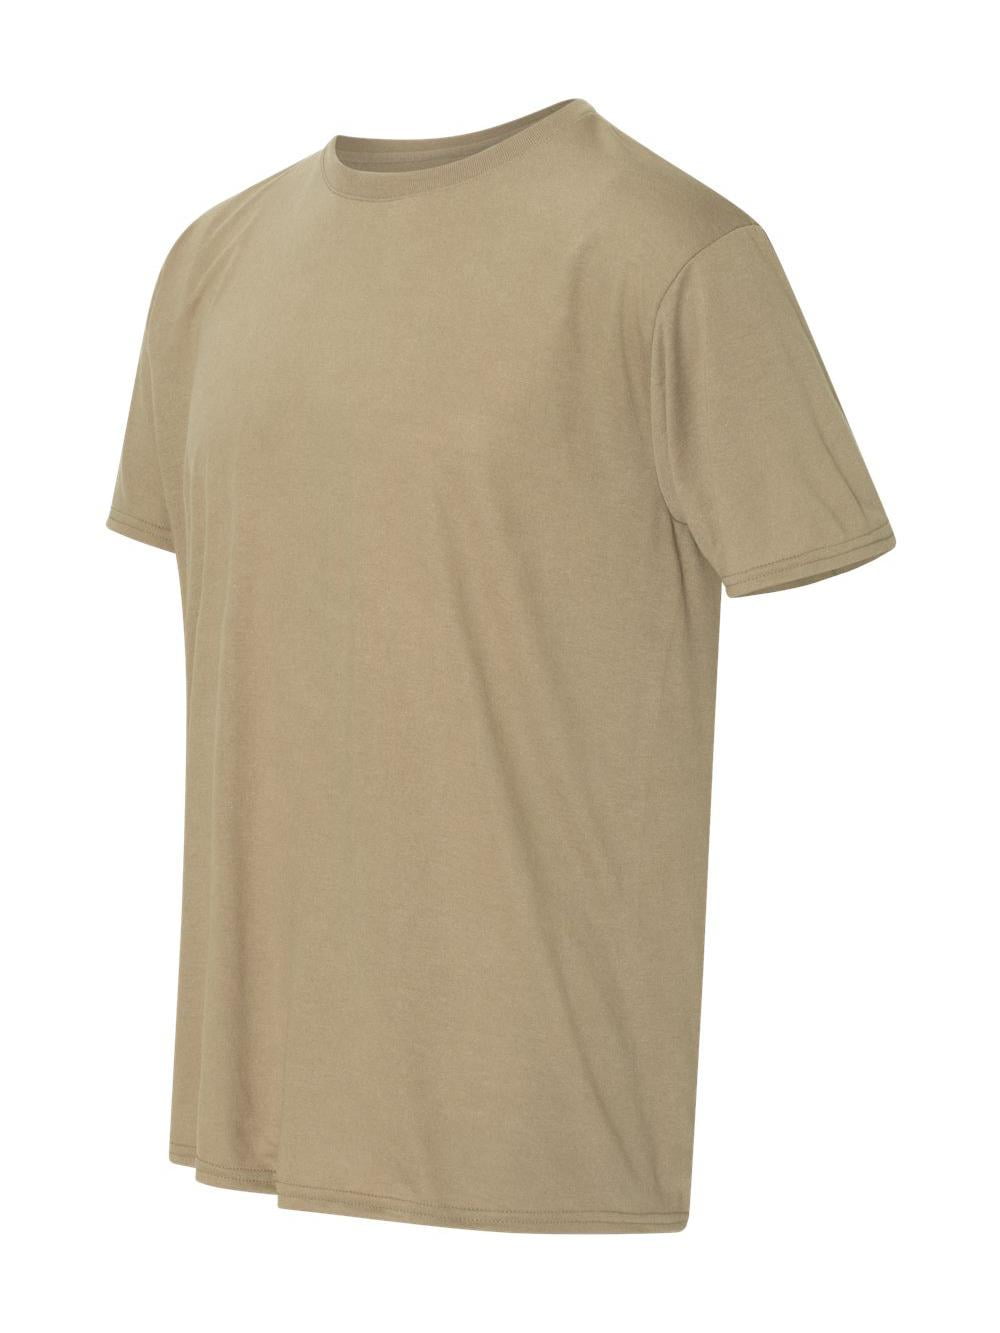 Gildan - Gildan - Performance T-Shirt - 42000 - Walmart.com - Walmart.com